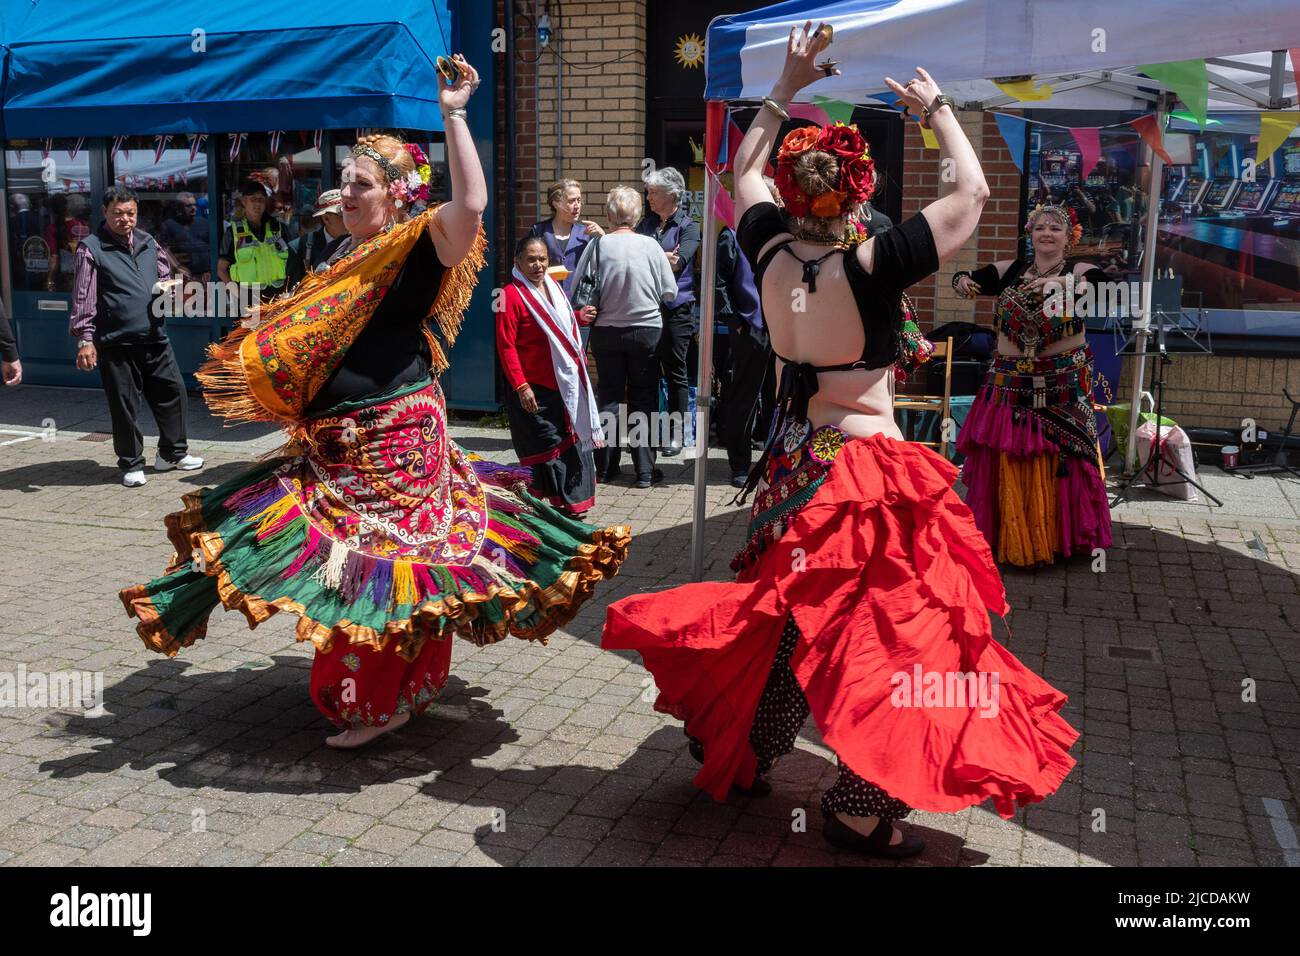 Danseuses du ventre vêtues de costumes colorés lors du Victoria Day, un événement annuel à Aldershot Town, Hampshire, Angleterre, Royaume-Uni Banque D'Images